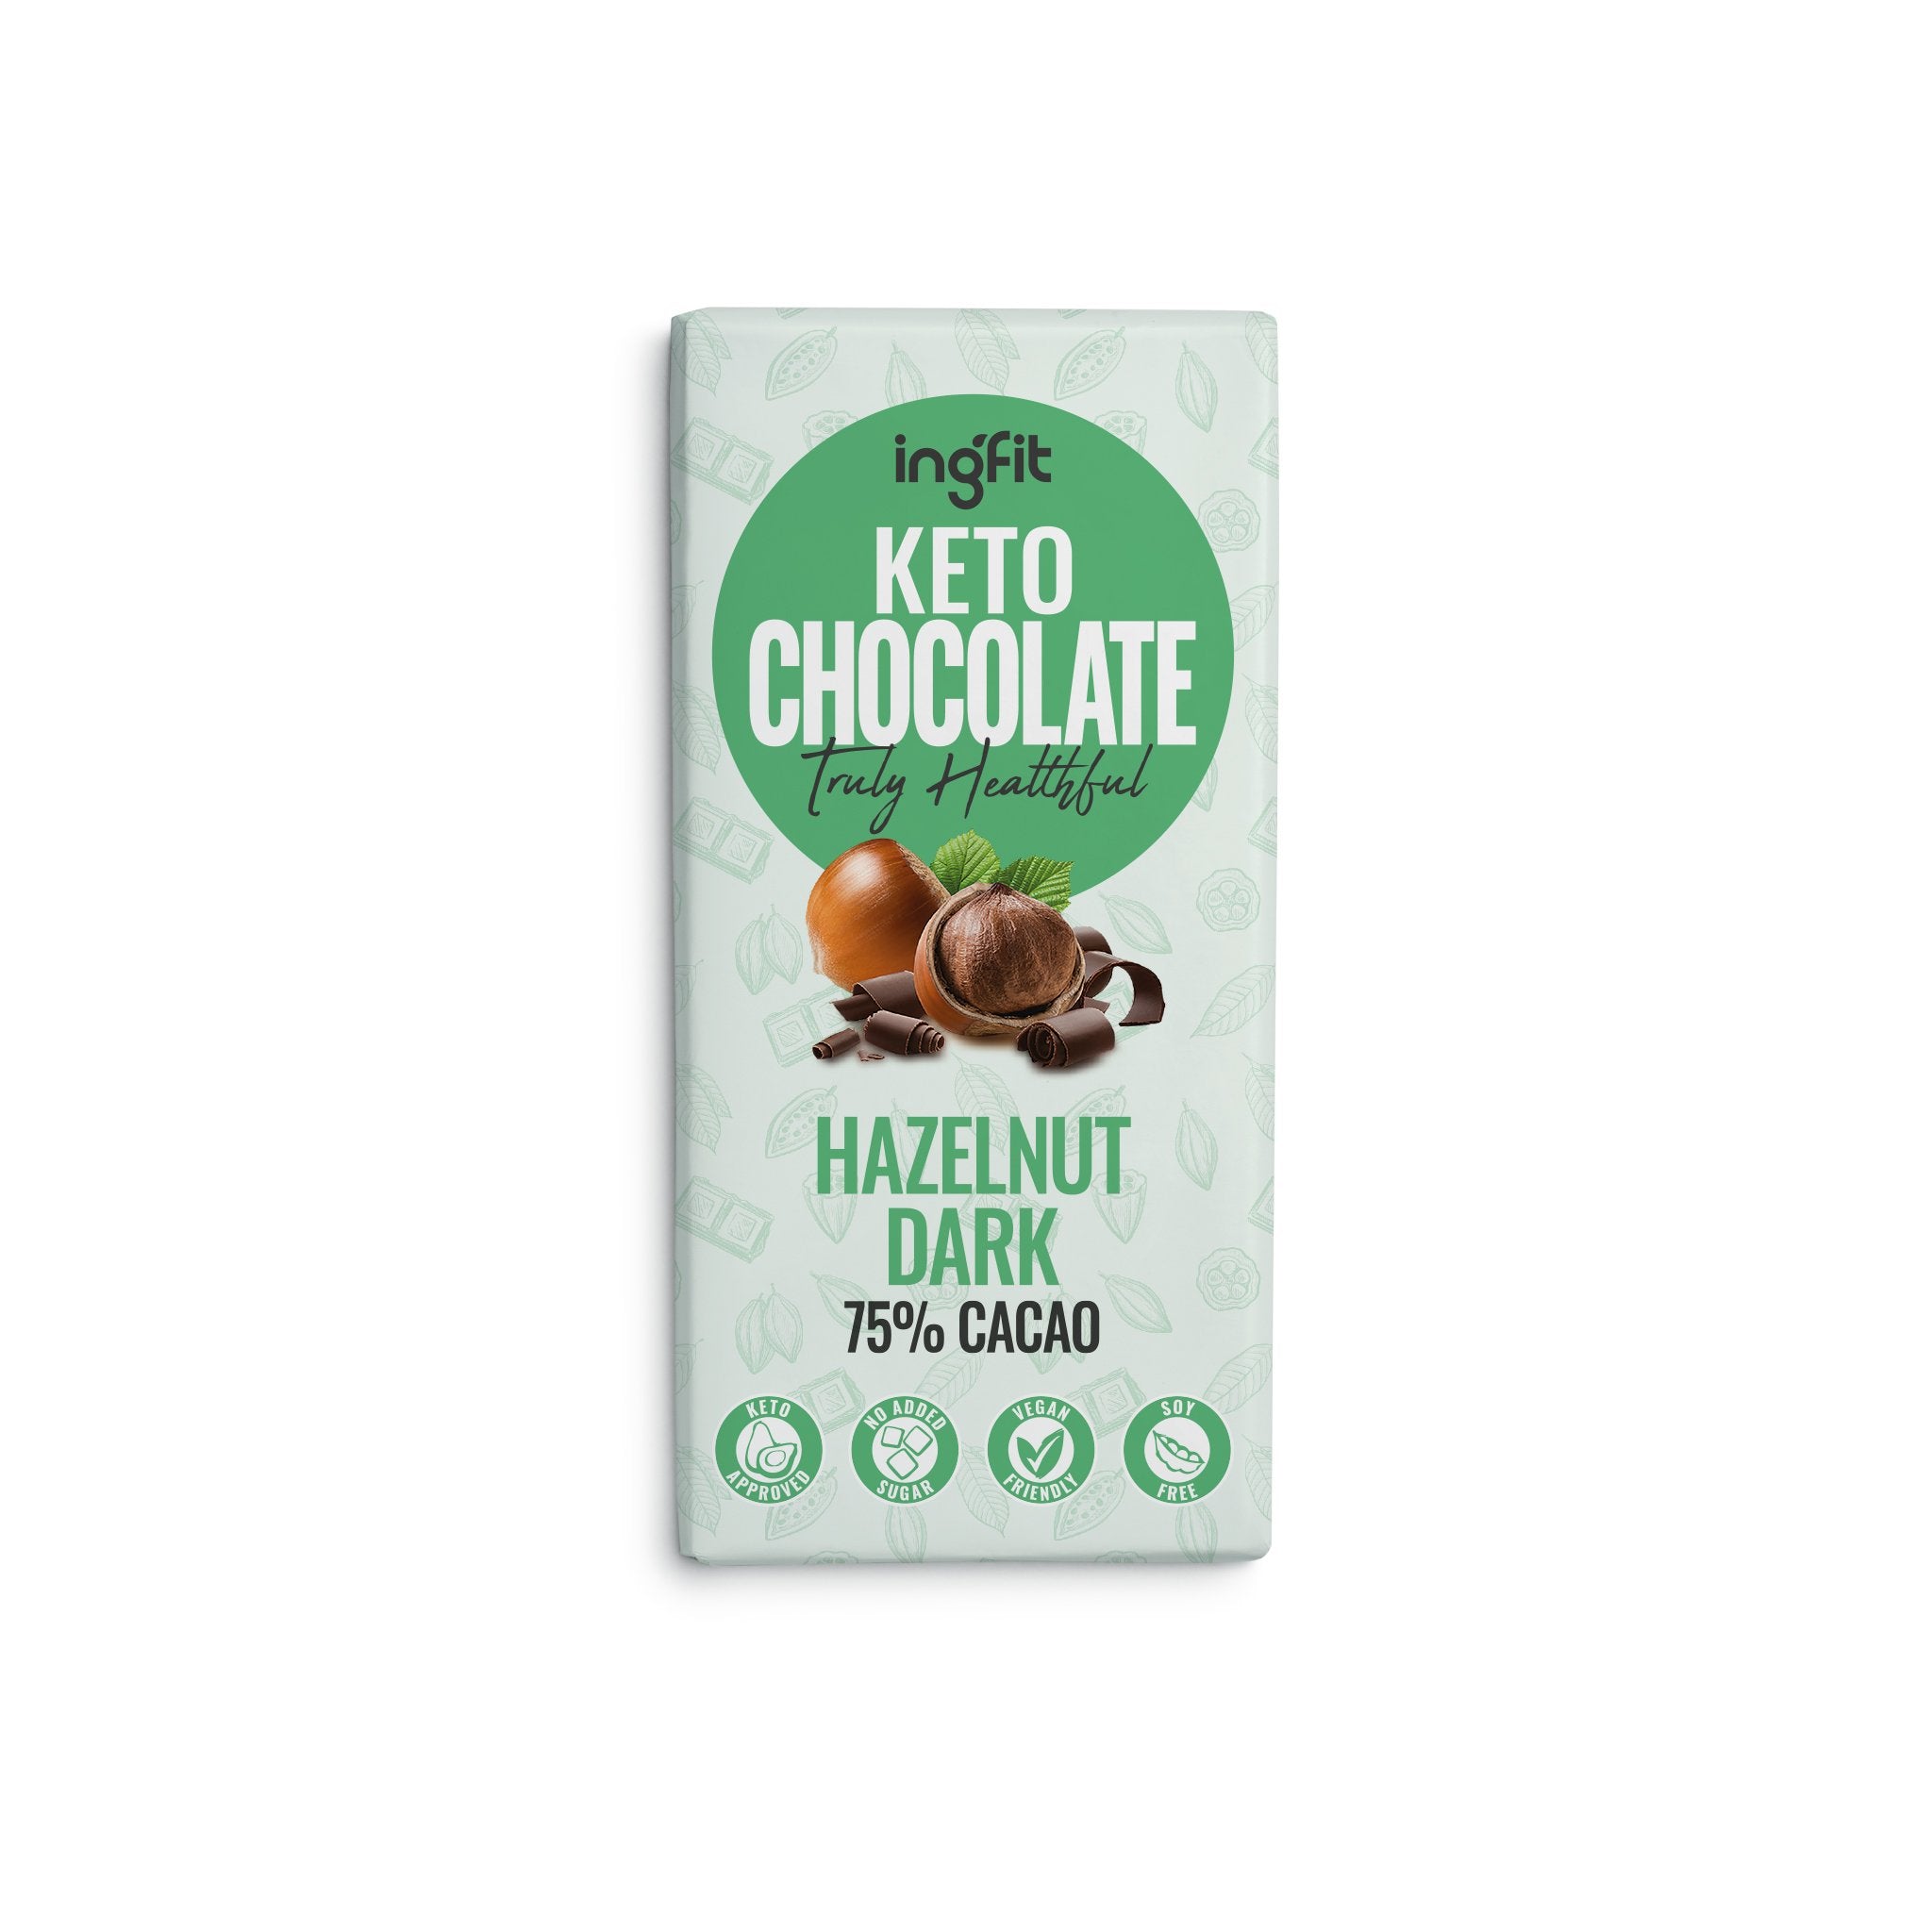 INGFIT Keto Dark Chocolate With Hazelnut, 95g